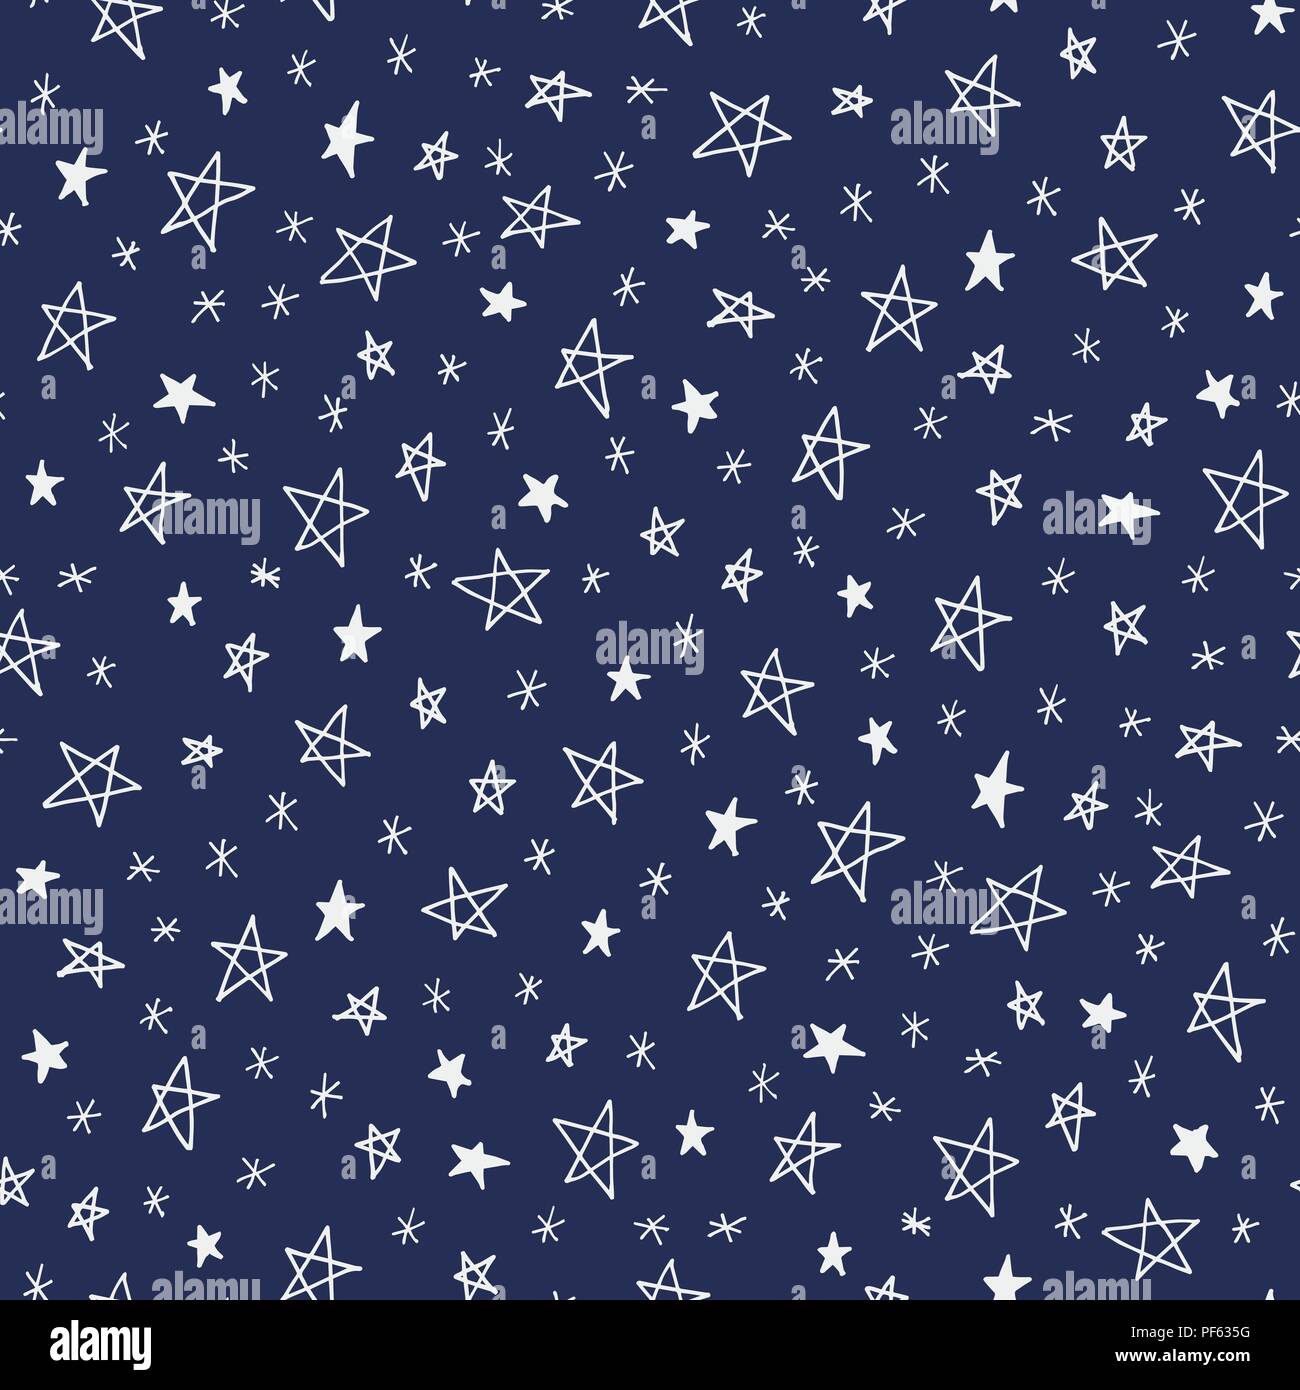 Hand doodle Sterne auf dem dunkelblauen Himmel Vektor nahtlose Muster gezeichnet. Winterurlaub Hintergrund. Süße Weihnachten Drucken. 24:00 Stunden. Stock Vektor